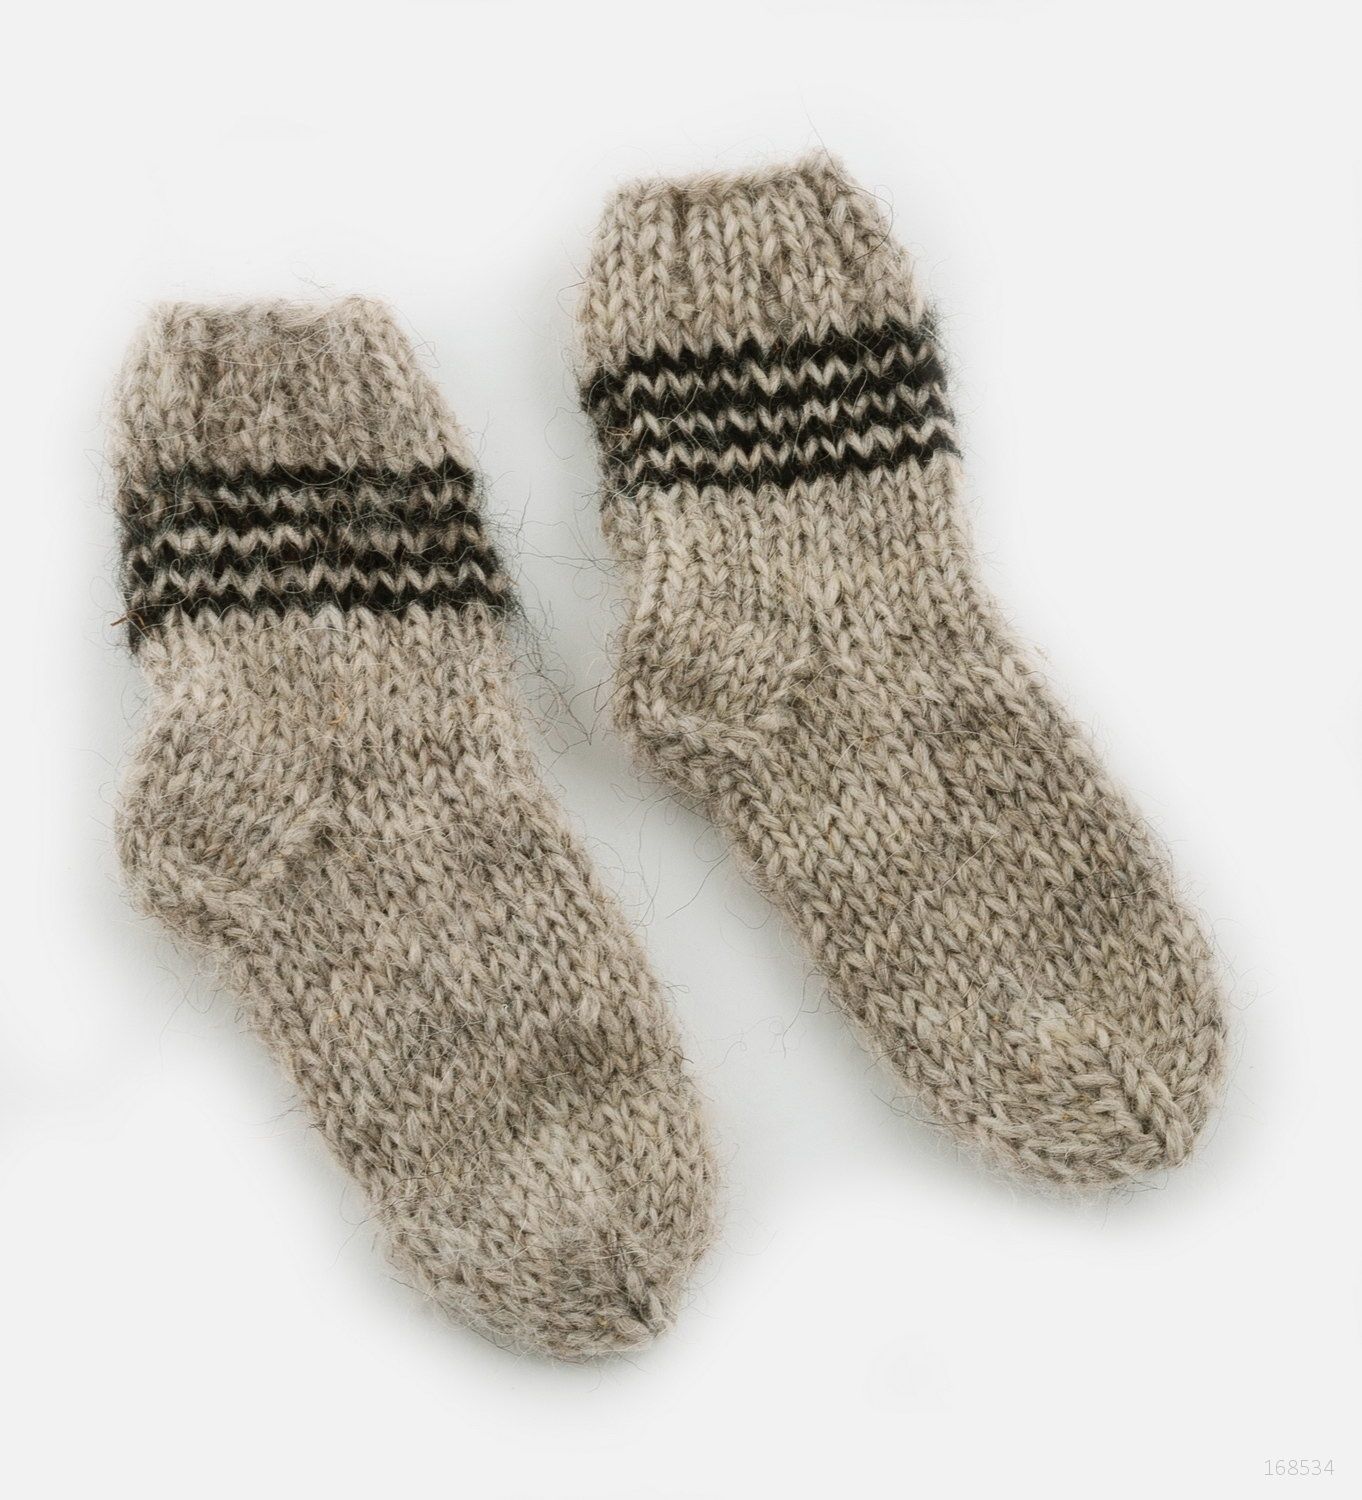 Children's socks made of wool photo 2